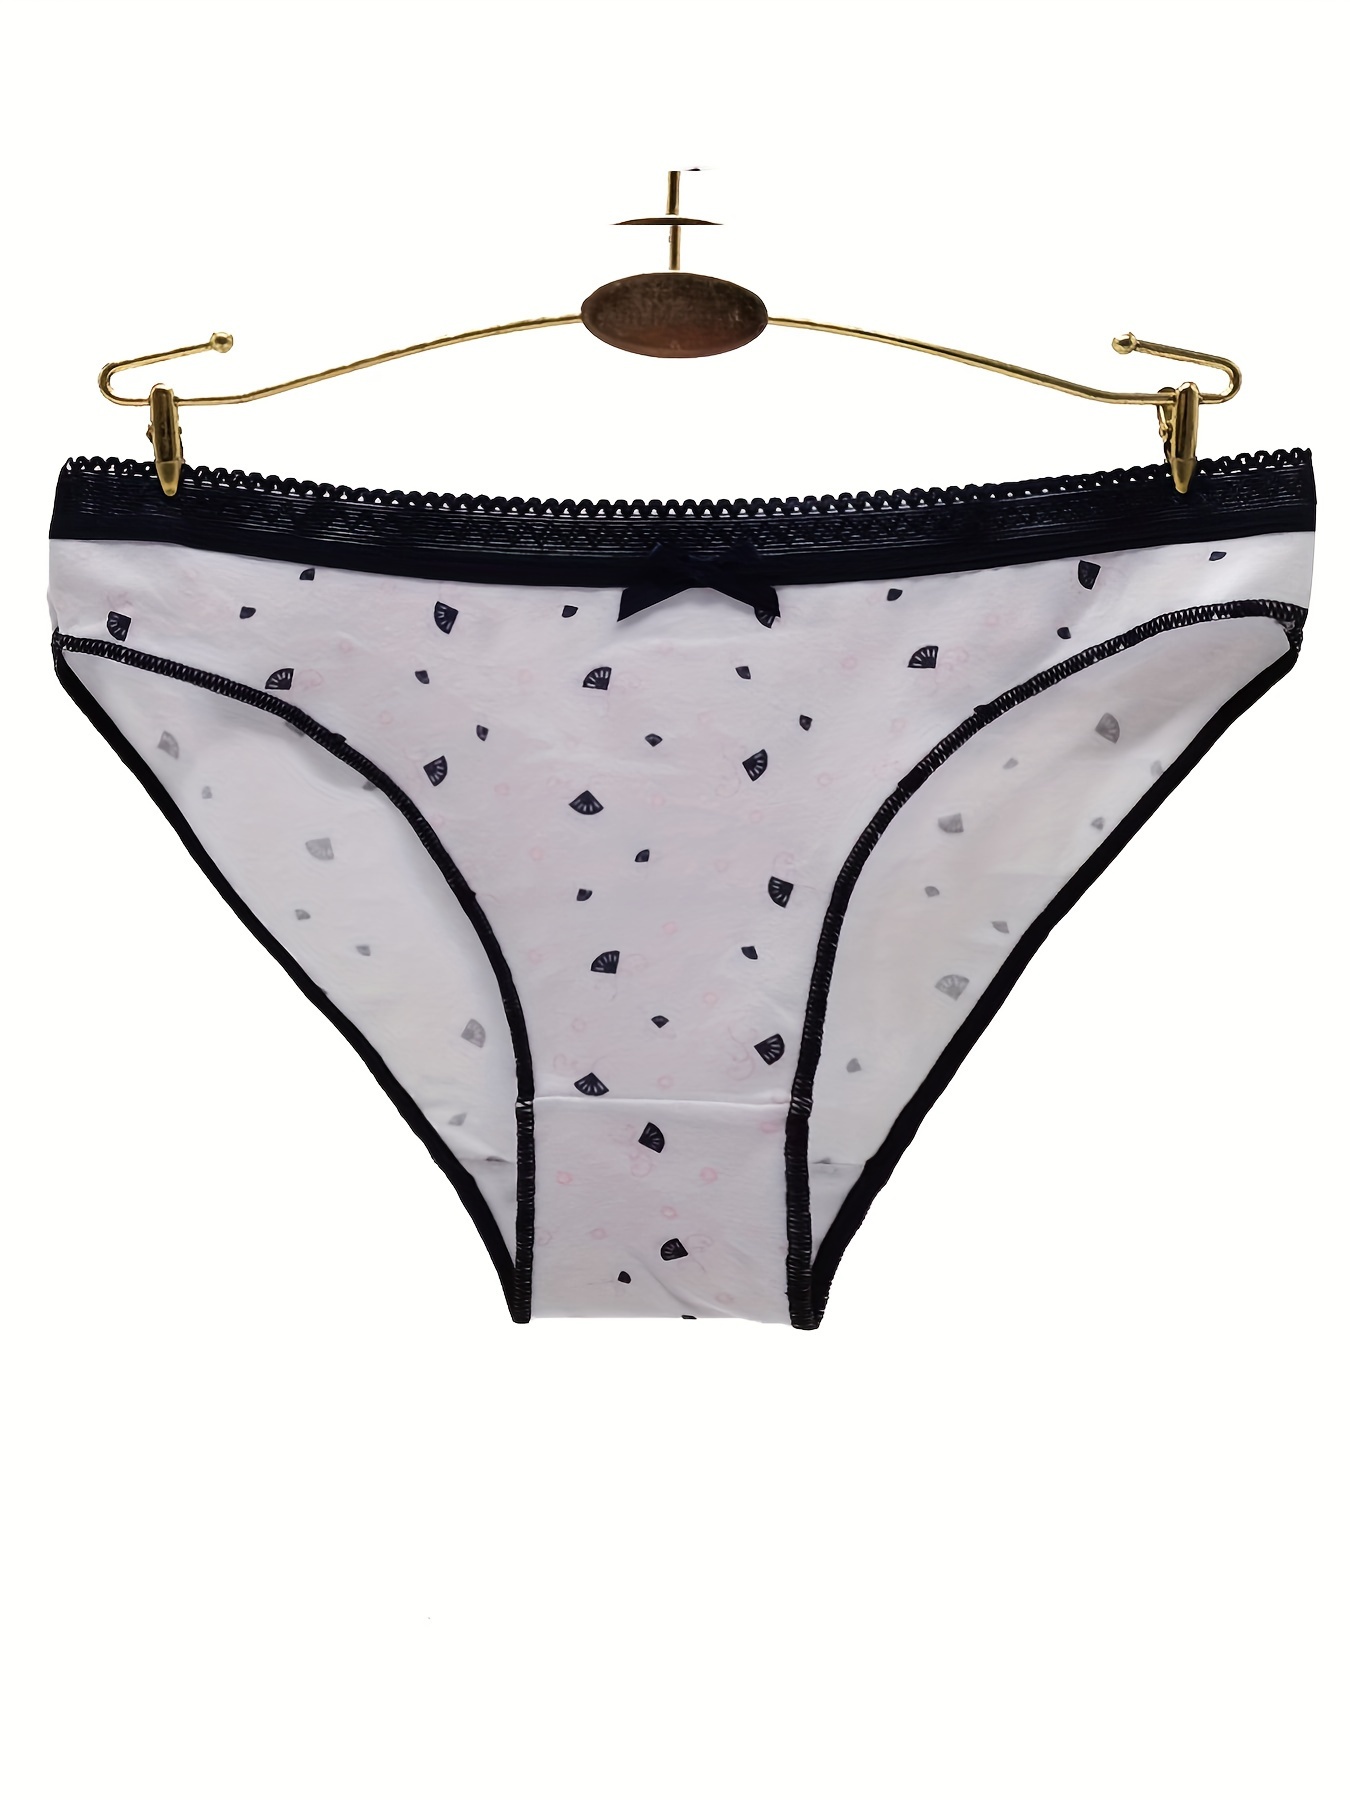 5pcs Colorblock Trim Briefs, Comfy & Breathable Stretchy Intimates Panties,  Women's Lingerie & Underwear